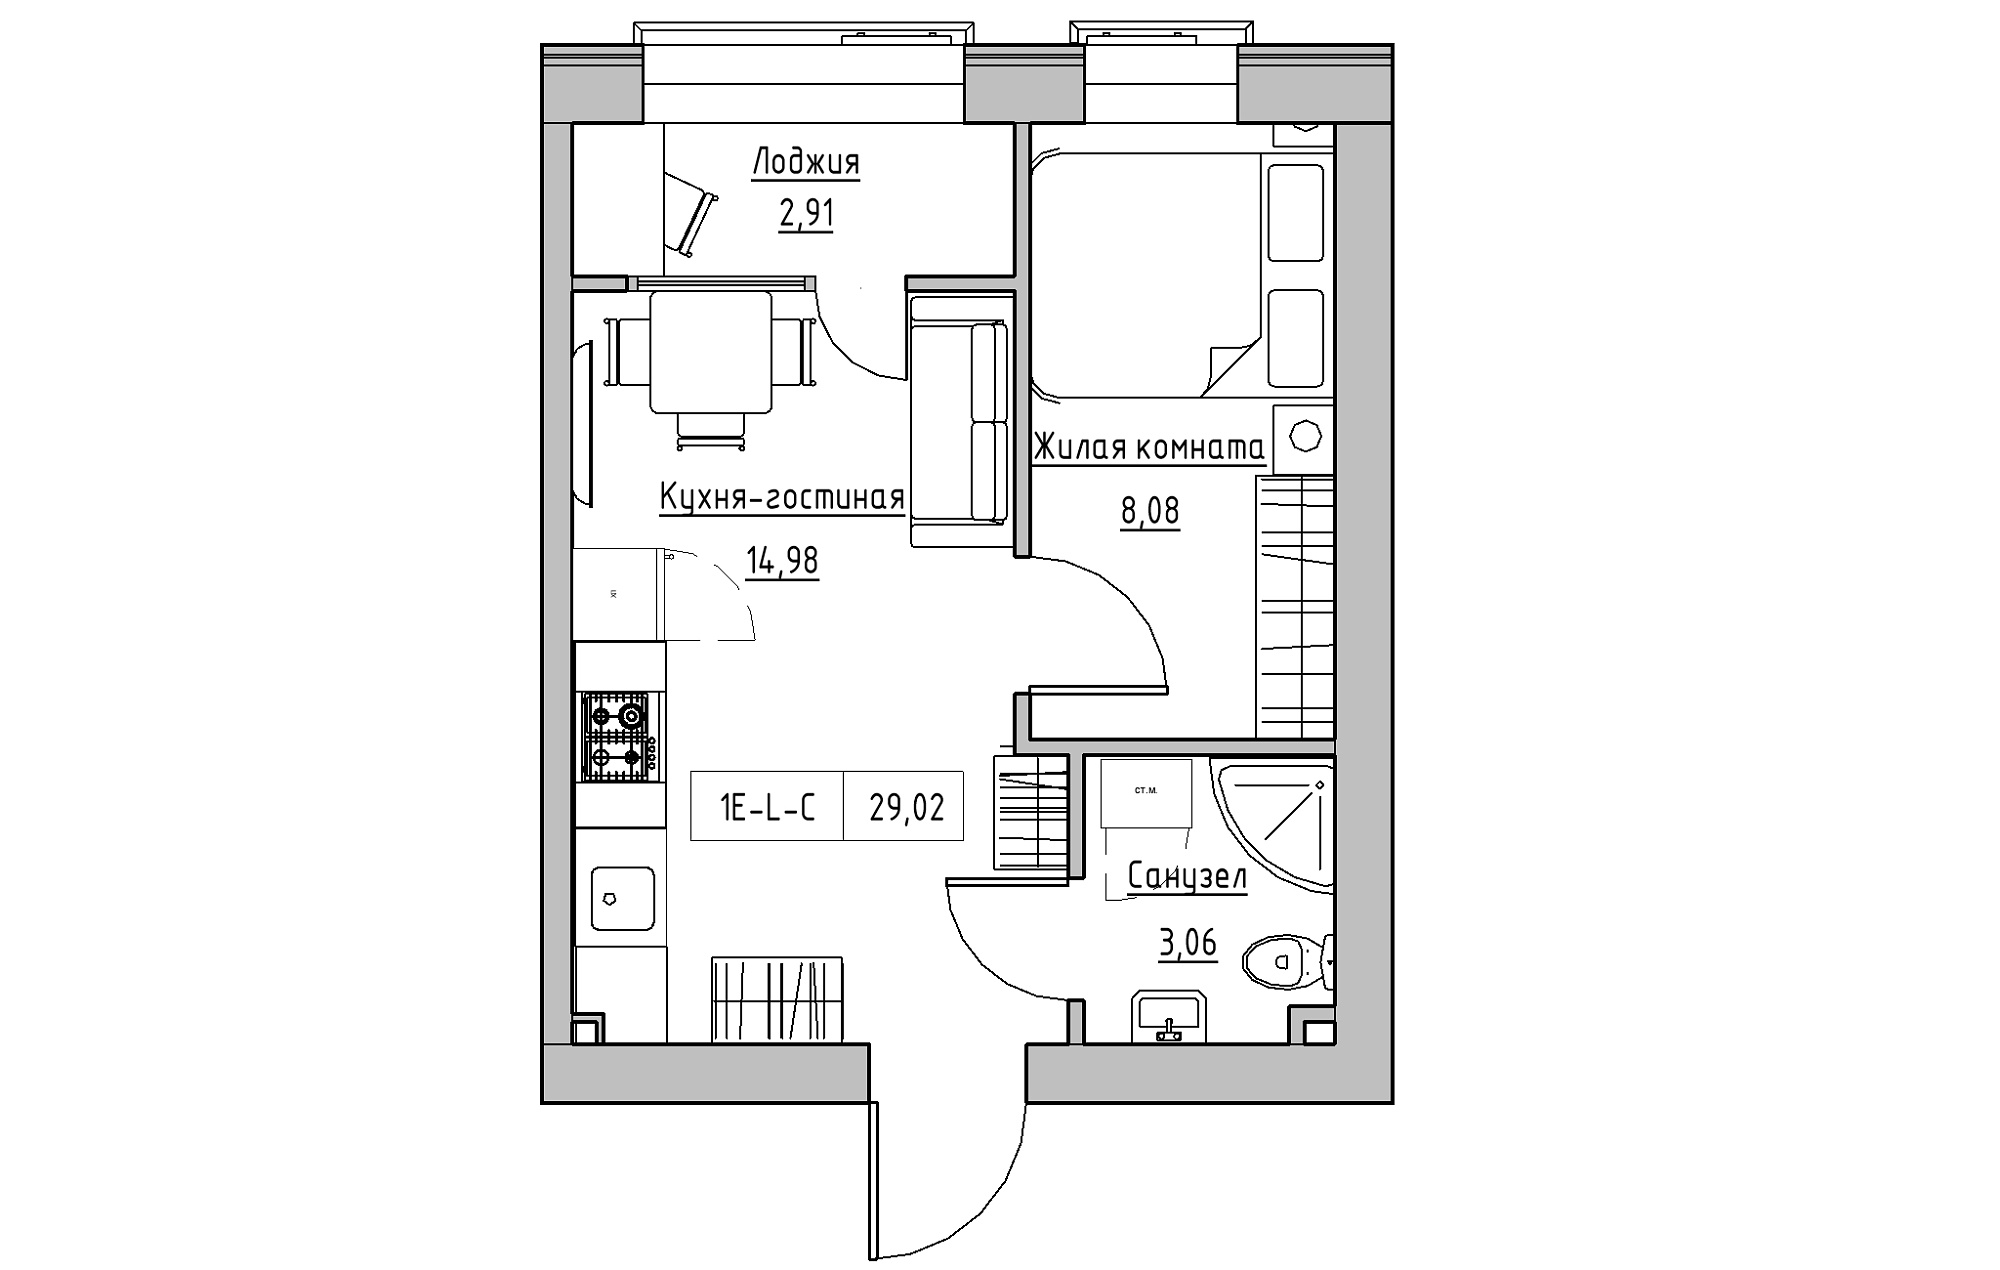 Планування 1-к квартира площею 29.01м2, KS-018-03/0007.